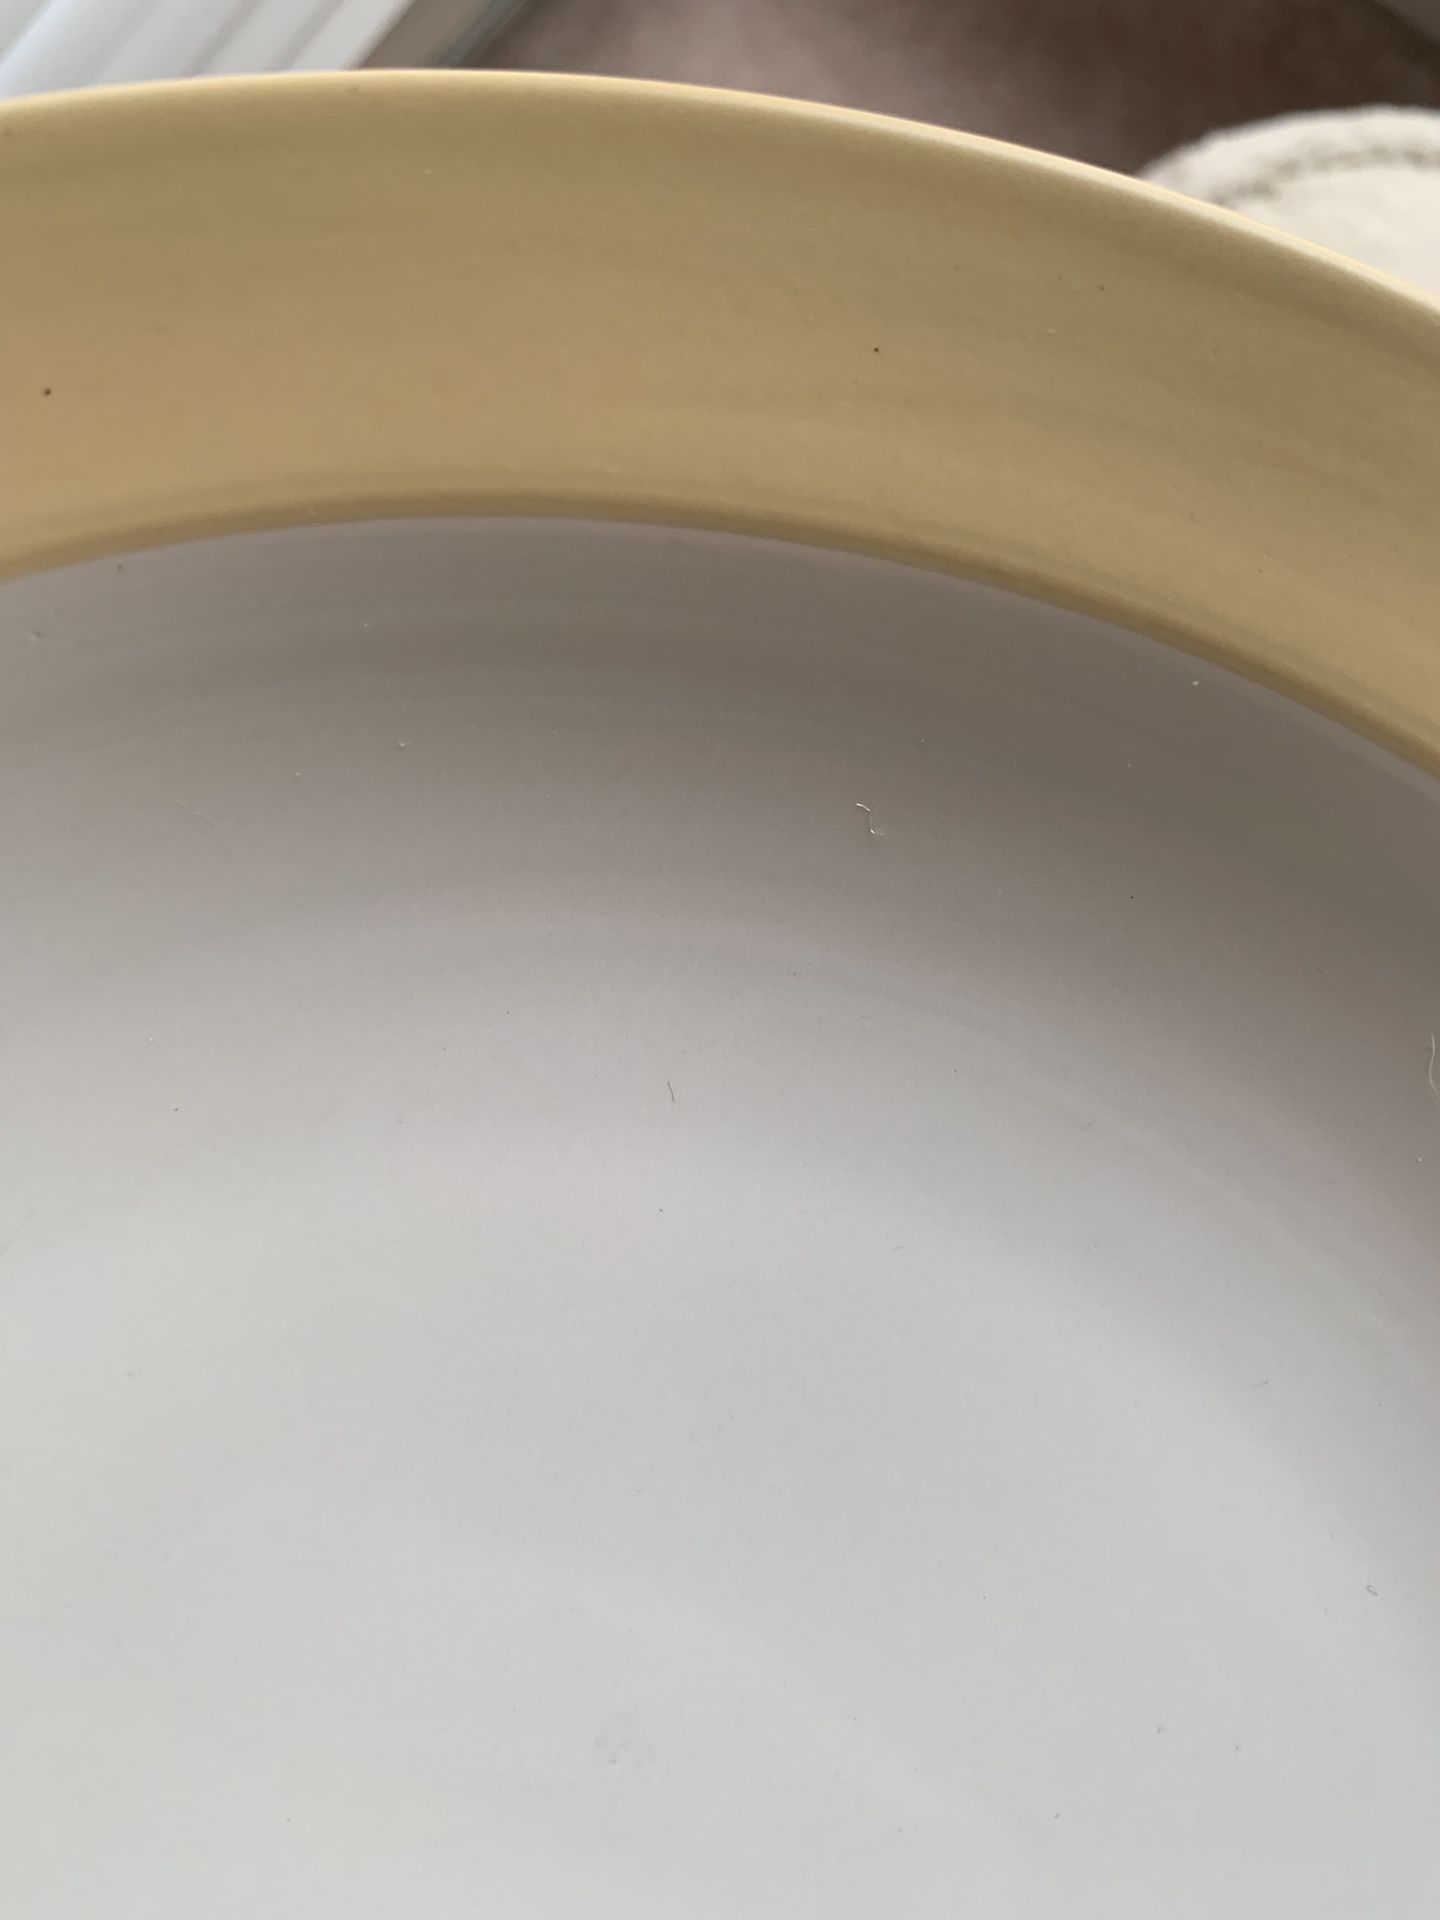 Noritake Colorwave Yellow 10” Individual Pasta Bowl